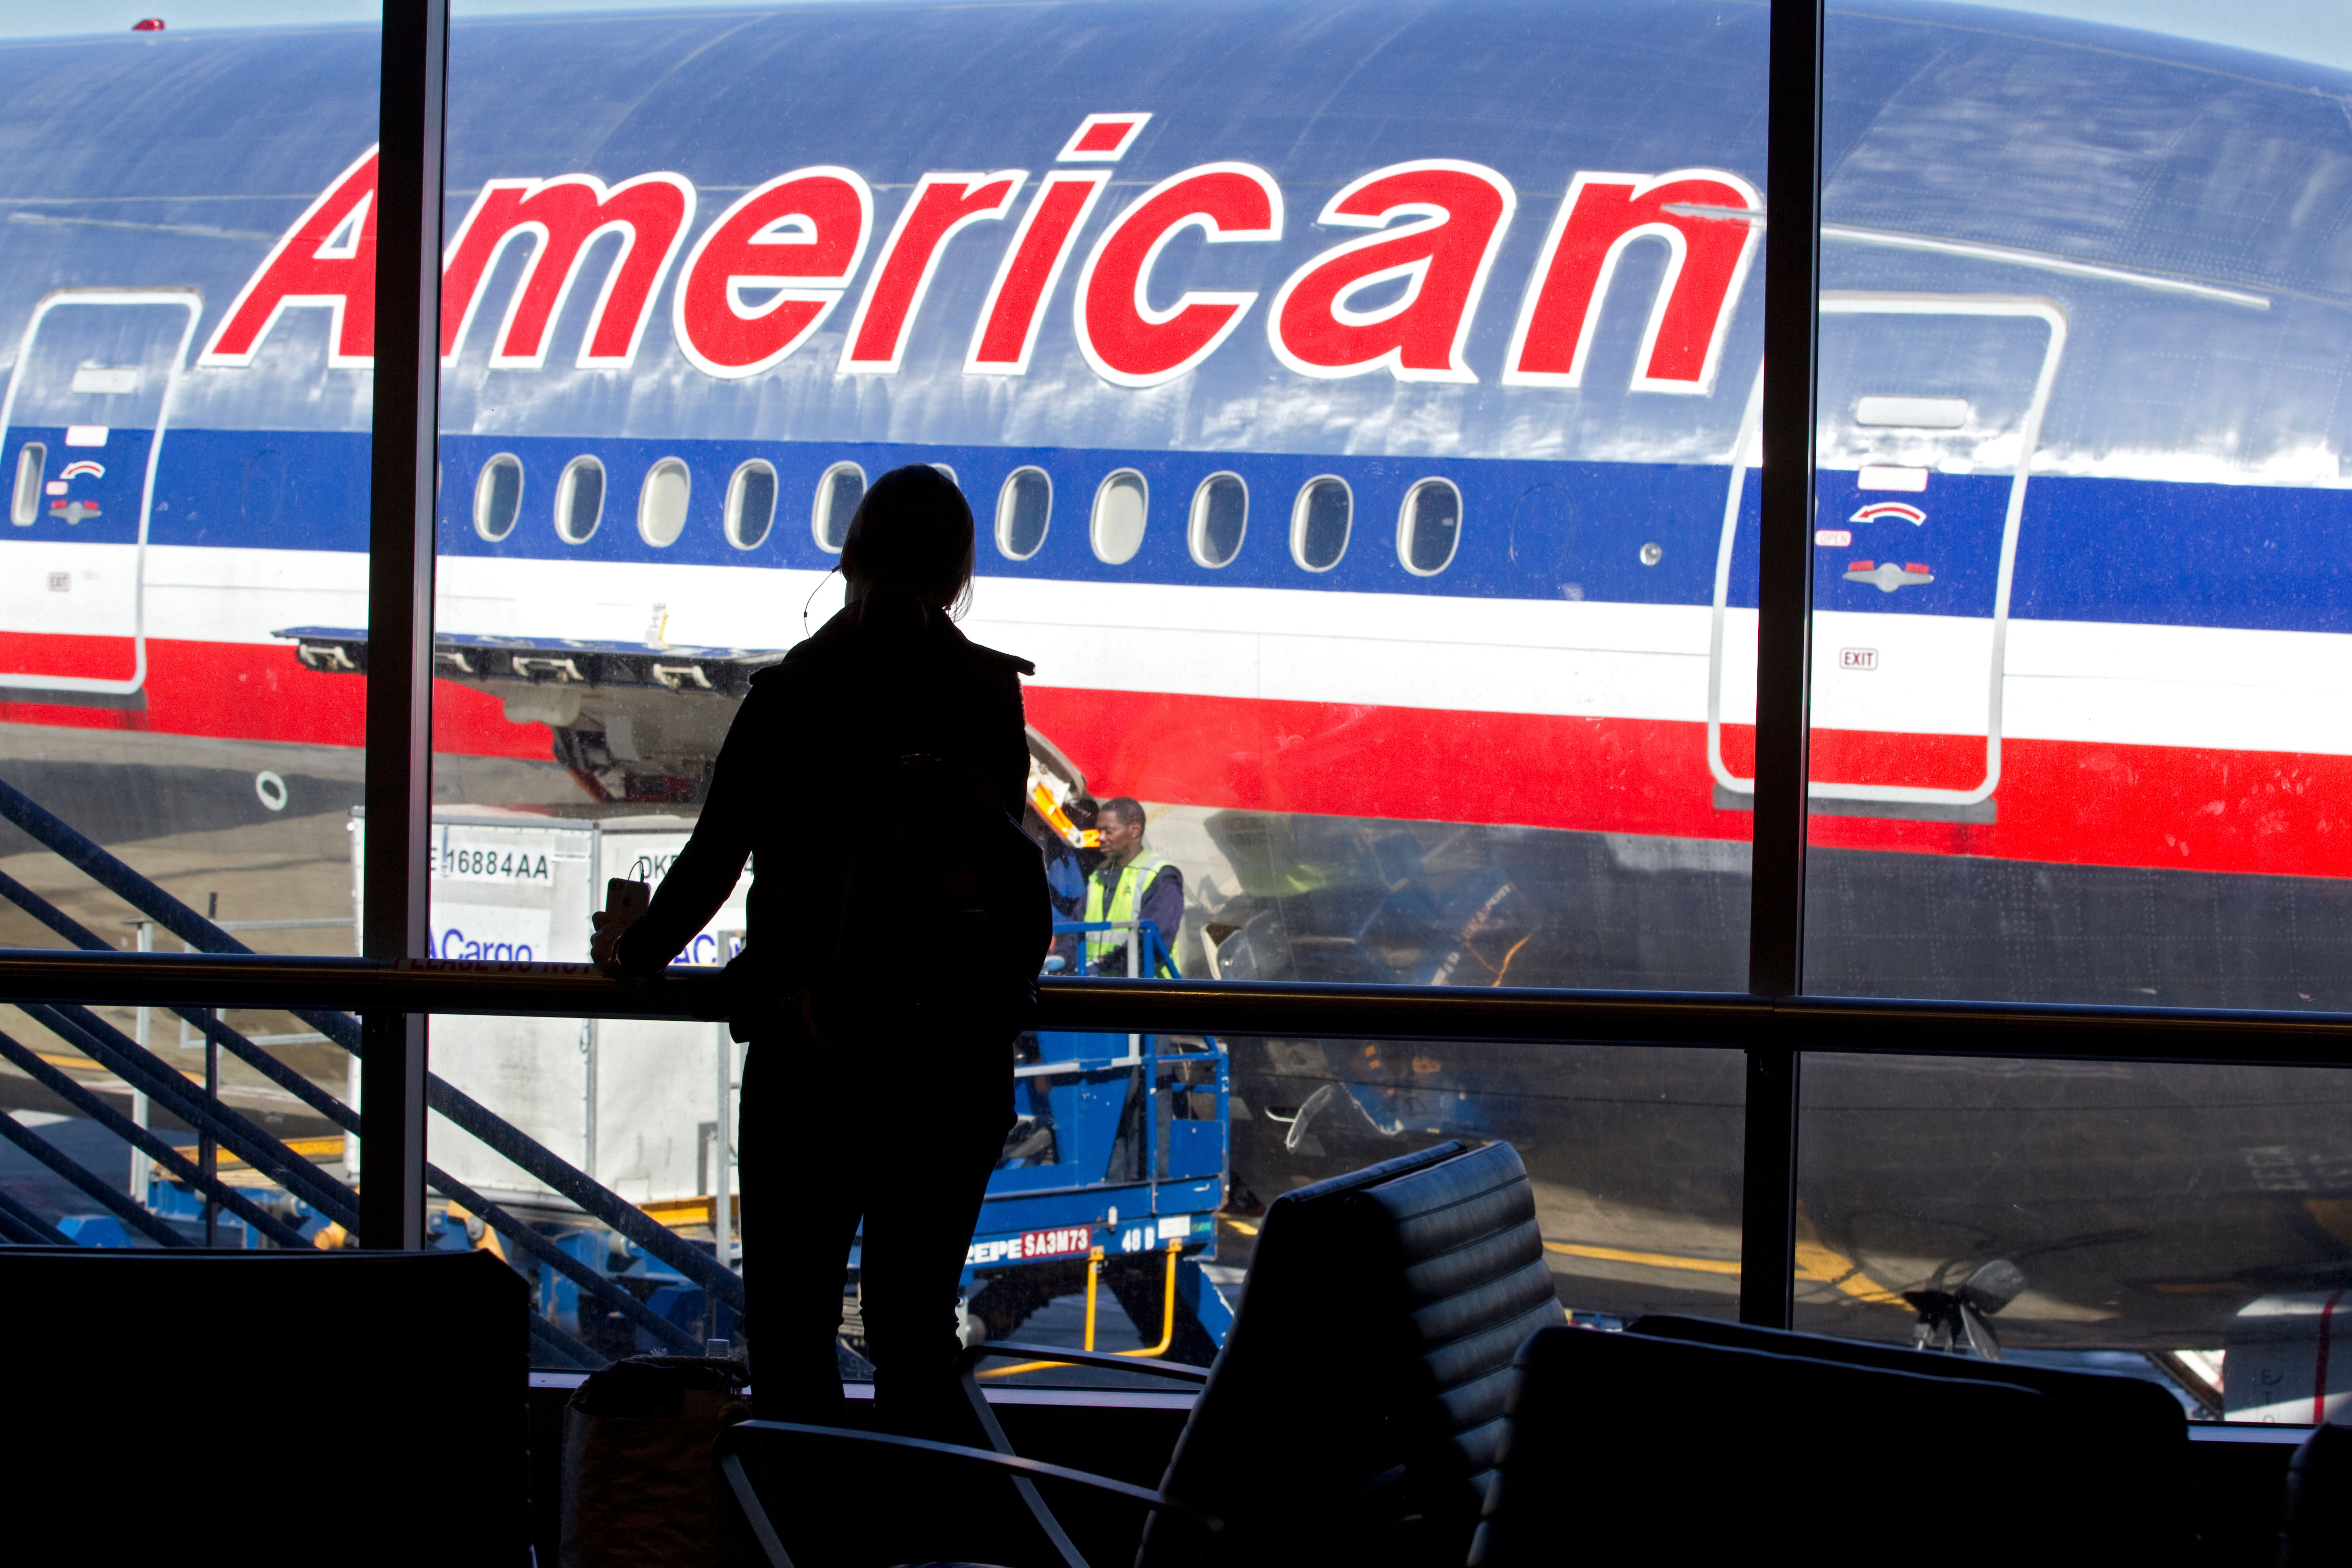 Beware of Phish: American Airlines, Revolut Data Breaches Expose Customer Data